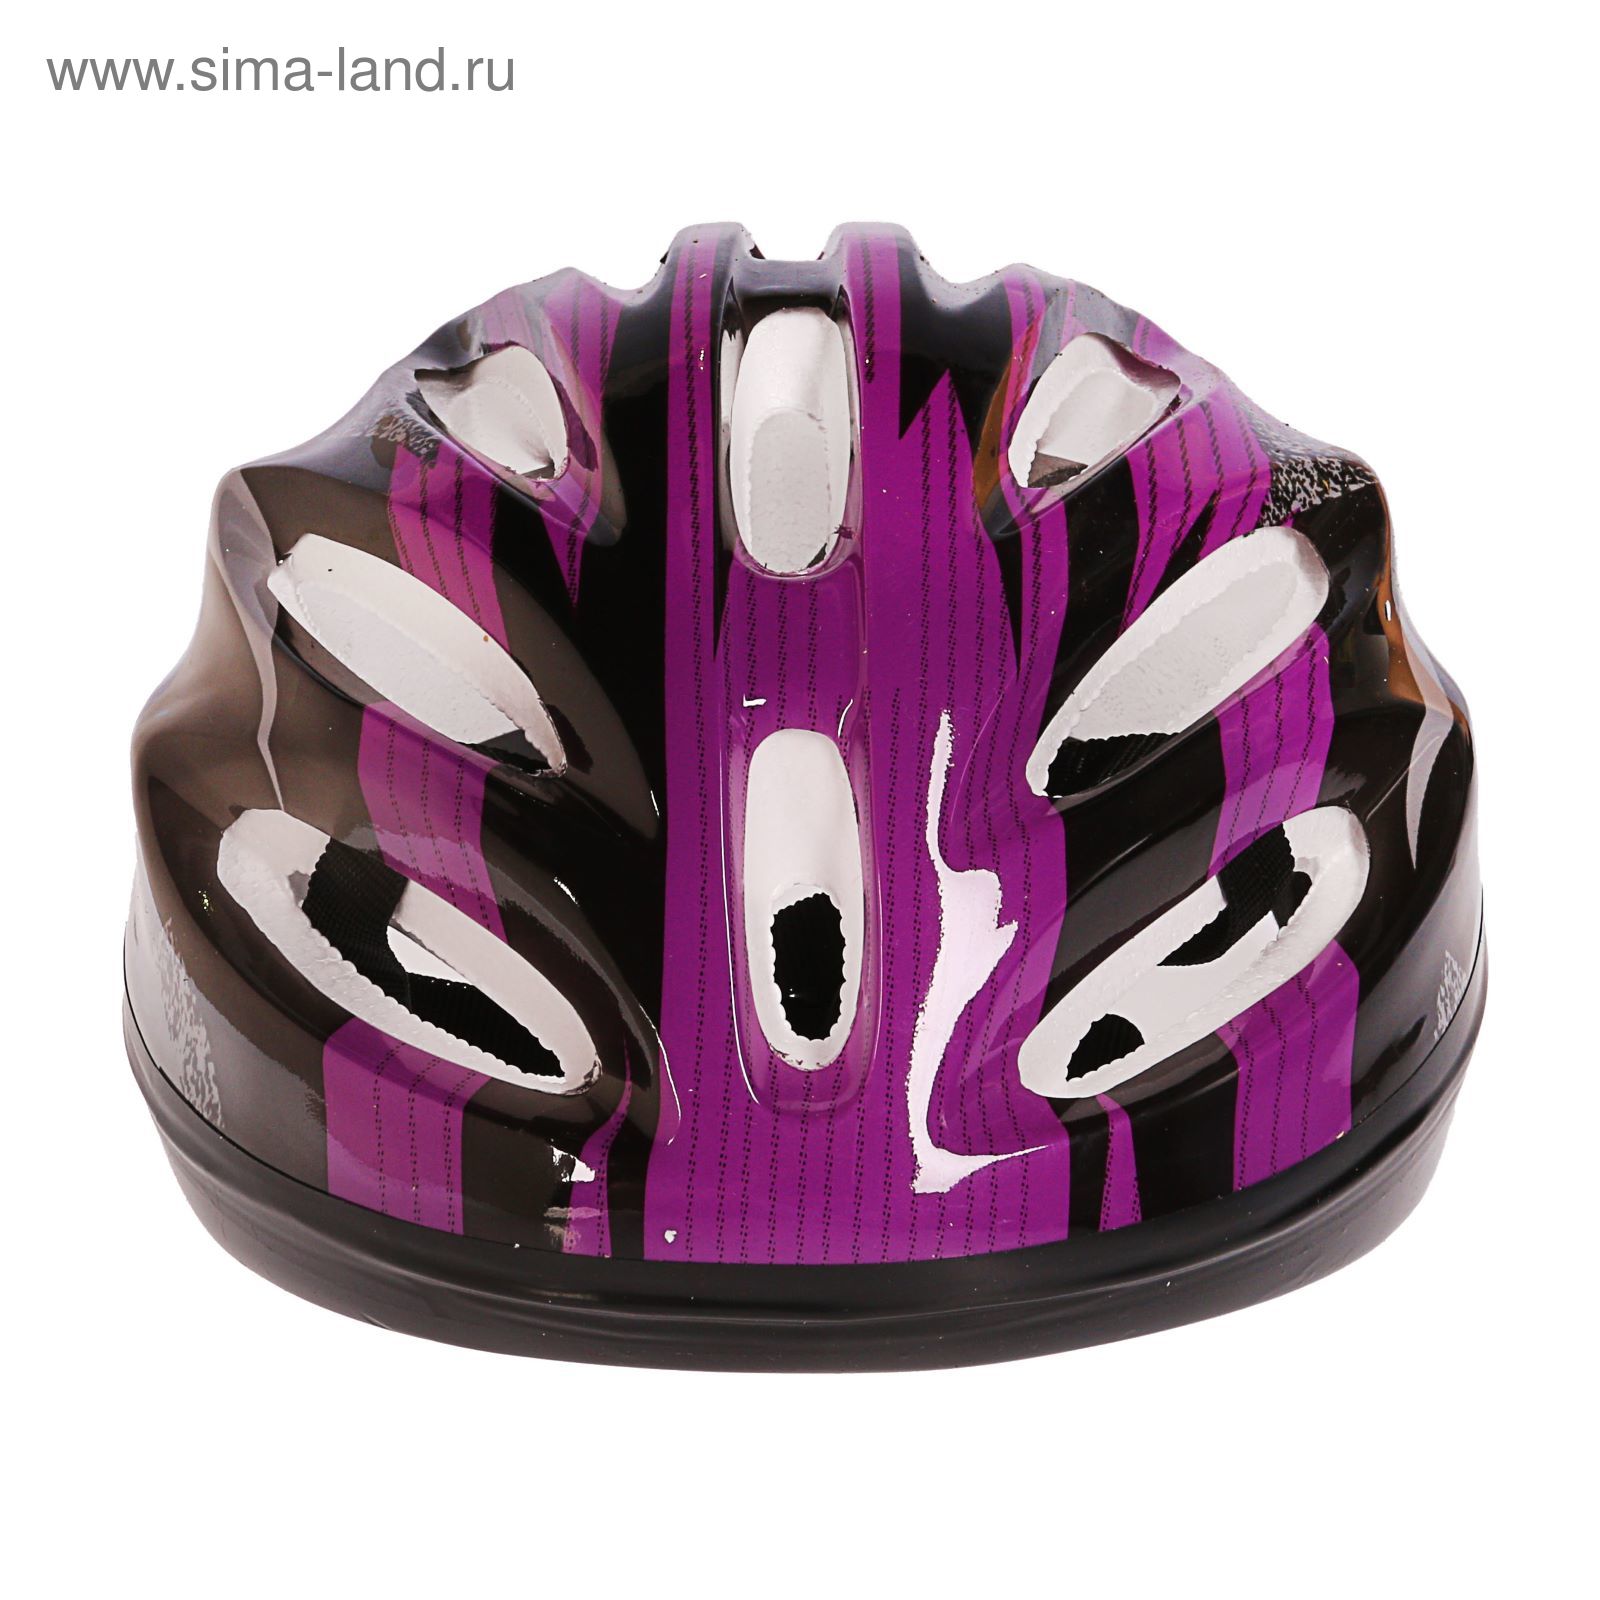 Шлем велосипедиста взрослый ОТ-11, размер L (56-58 см), цвет: сиренево-черный